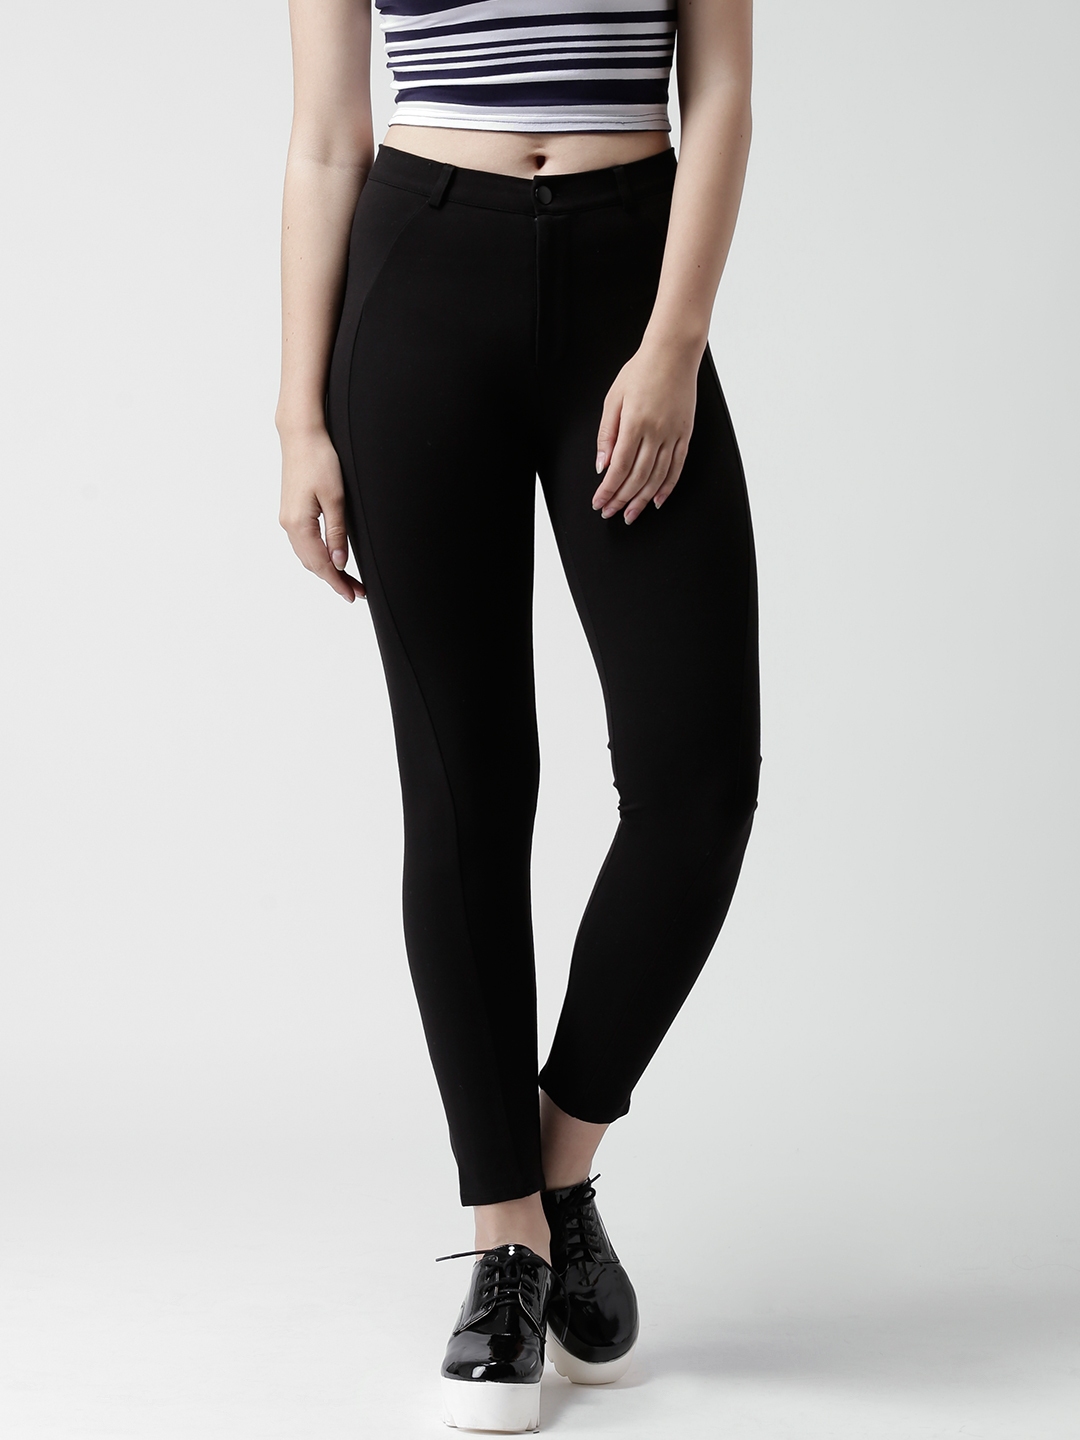 Buy New Look Black Panelled Jeggings - Jeggings for Women 1302105